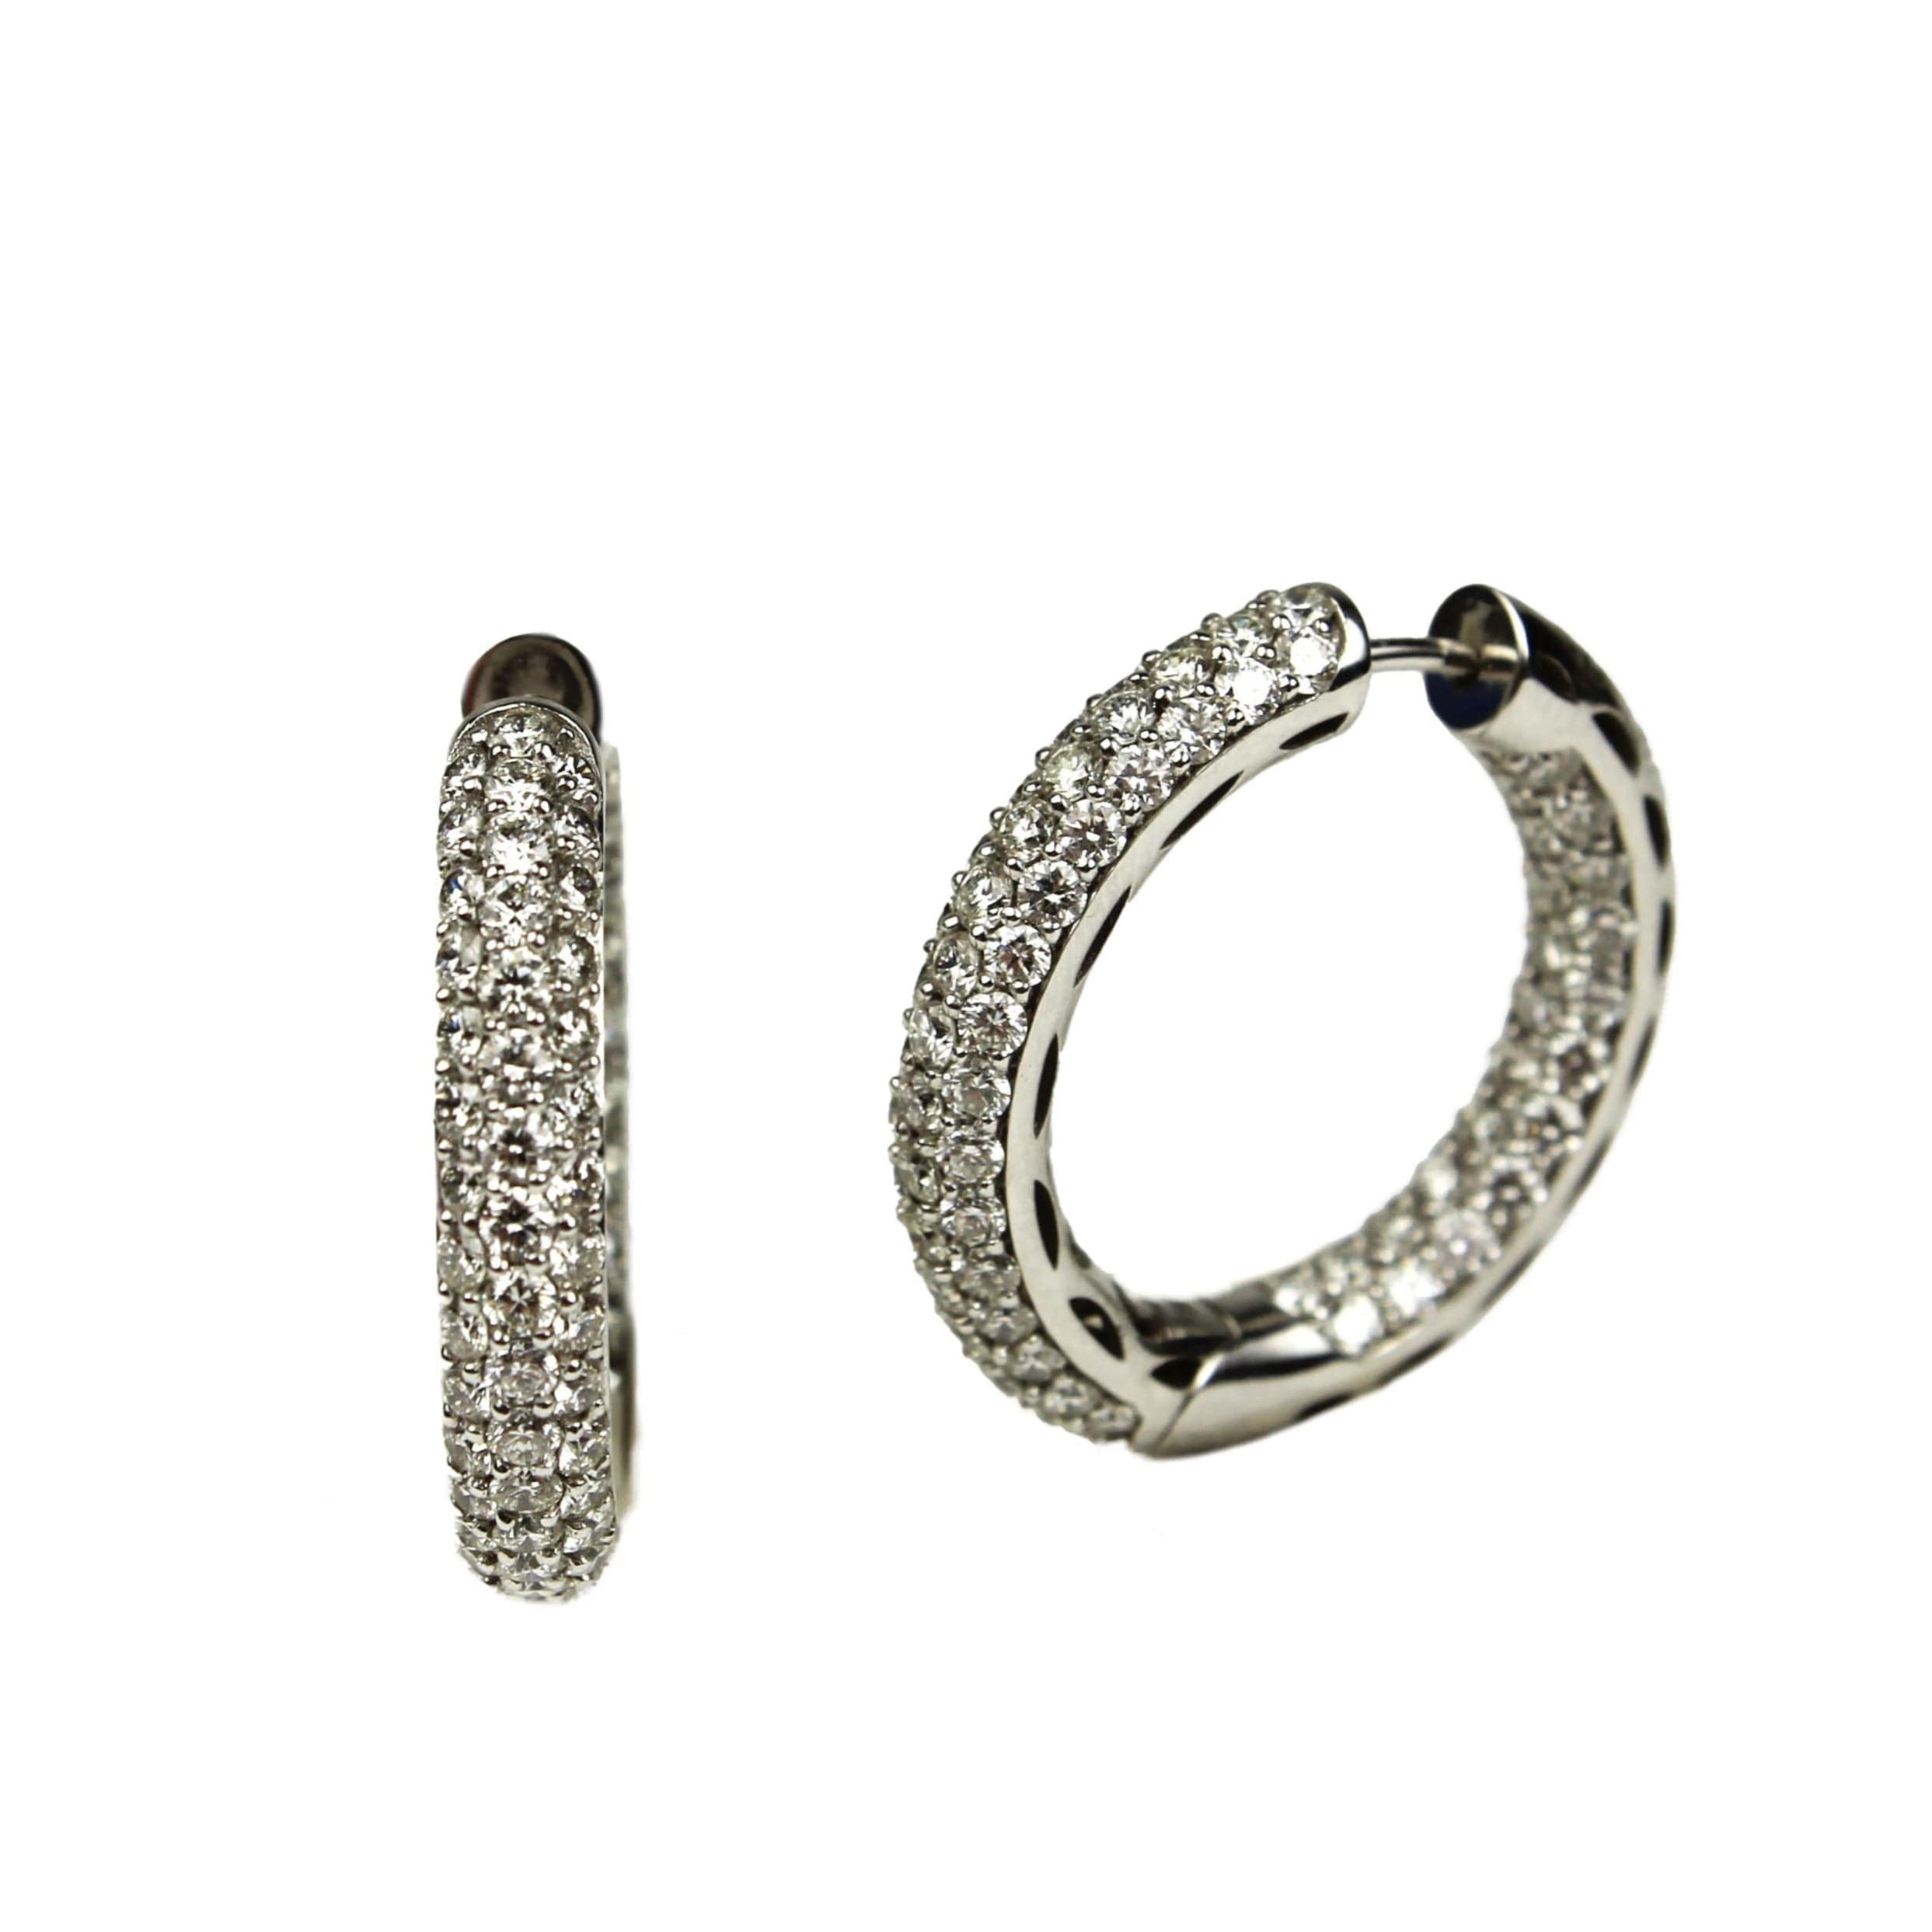 Christopher Designs Earring 18K White Gold Diamond Hoop Earrings